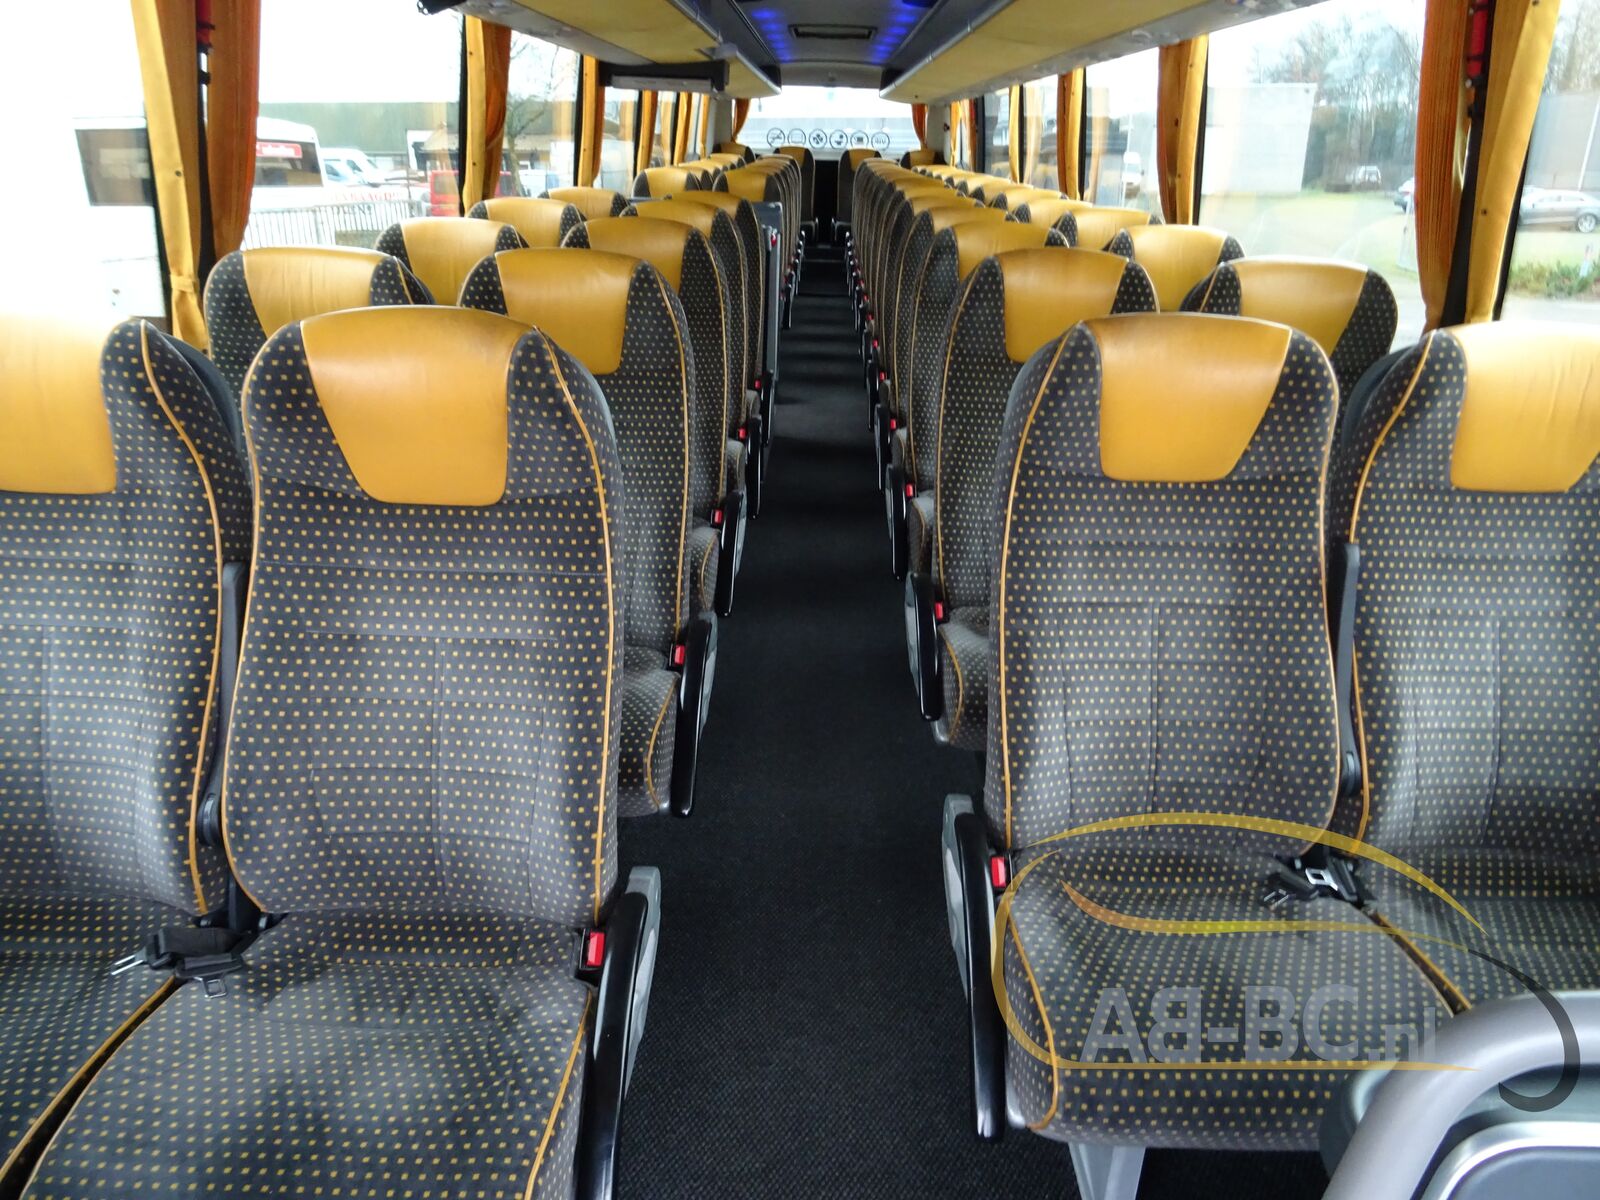 coach-bus-VDL-BOVA-Magiq-54-Seats-EURO-5---1642160427265920943_orig_53176790c1342e8852c974c0927d41b4--22011413334676017500